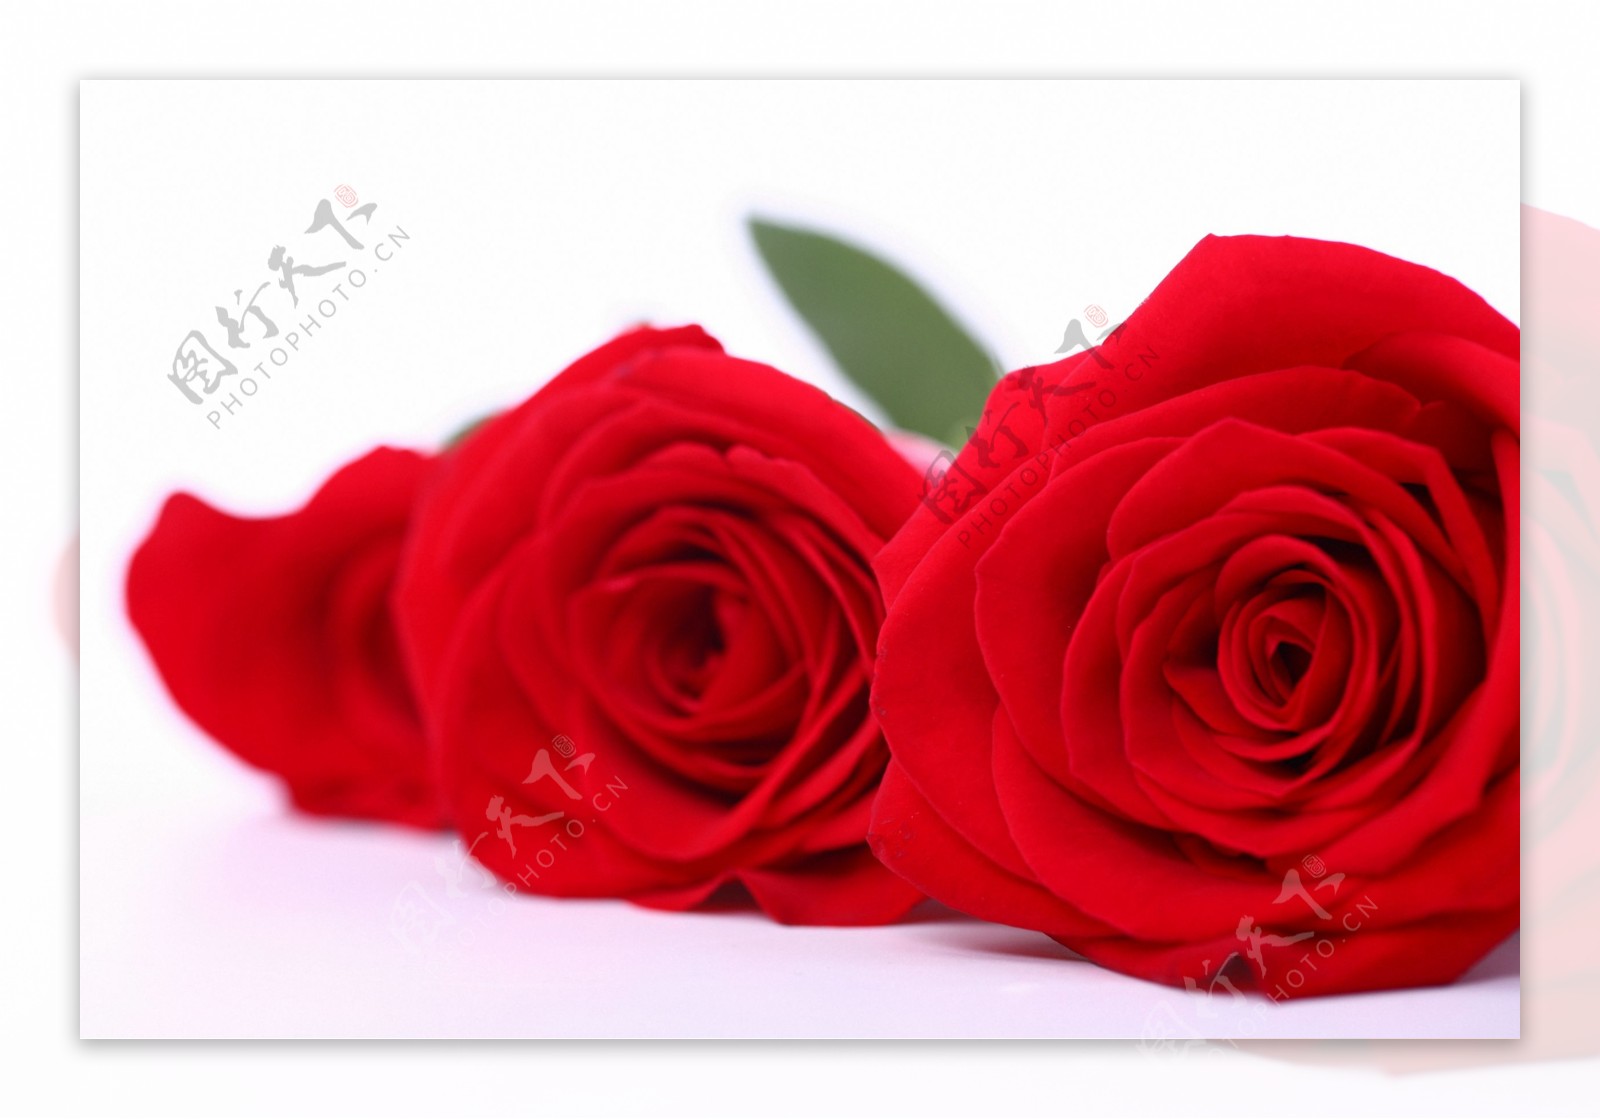 三朵大红的玫瑰花